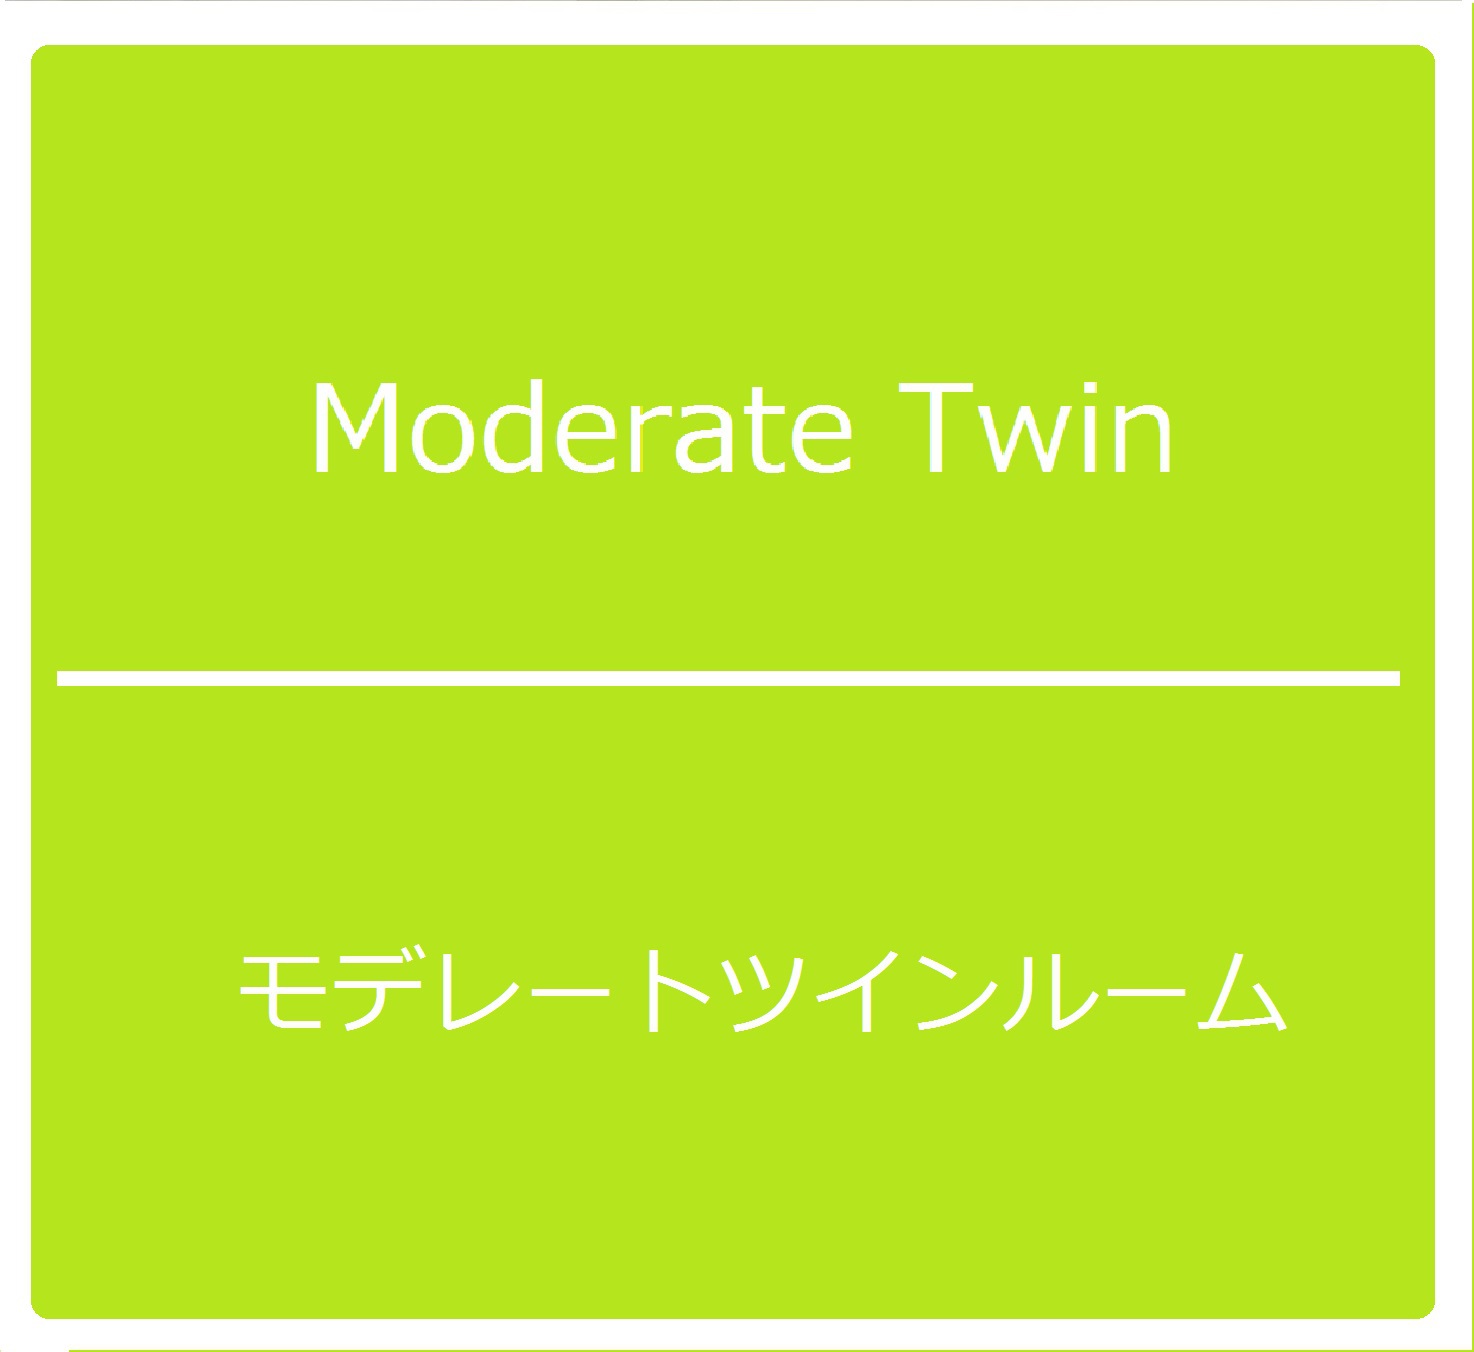 Moderate Twin